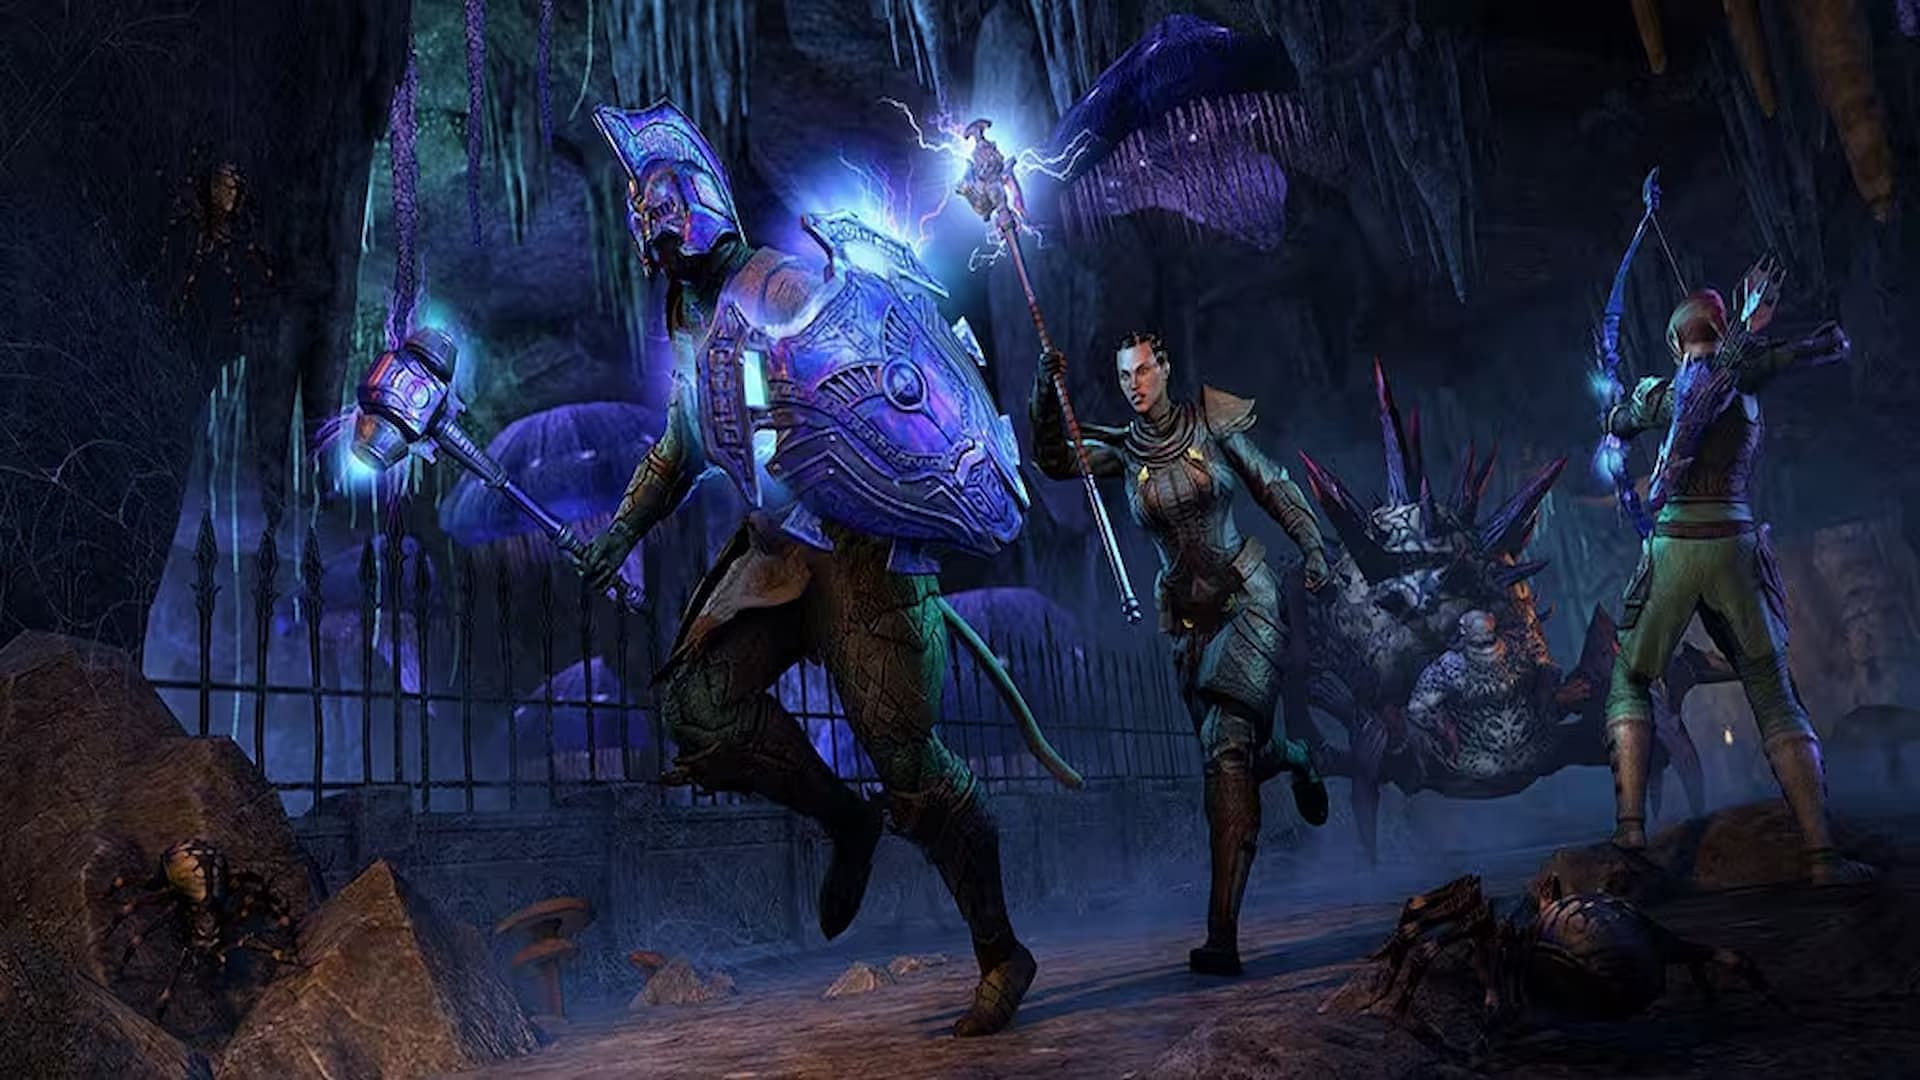 Adventurers exploring dungeons and fighting bosses in the Elder Scrolls Online